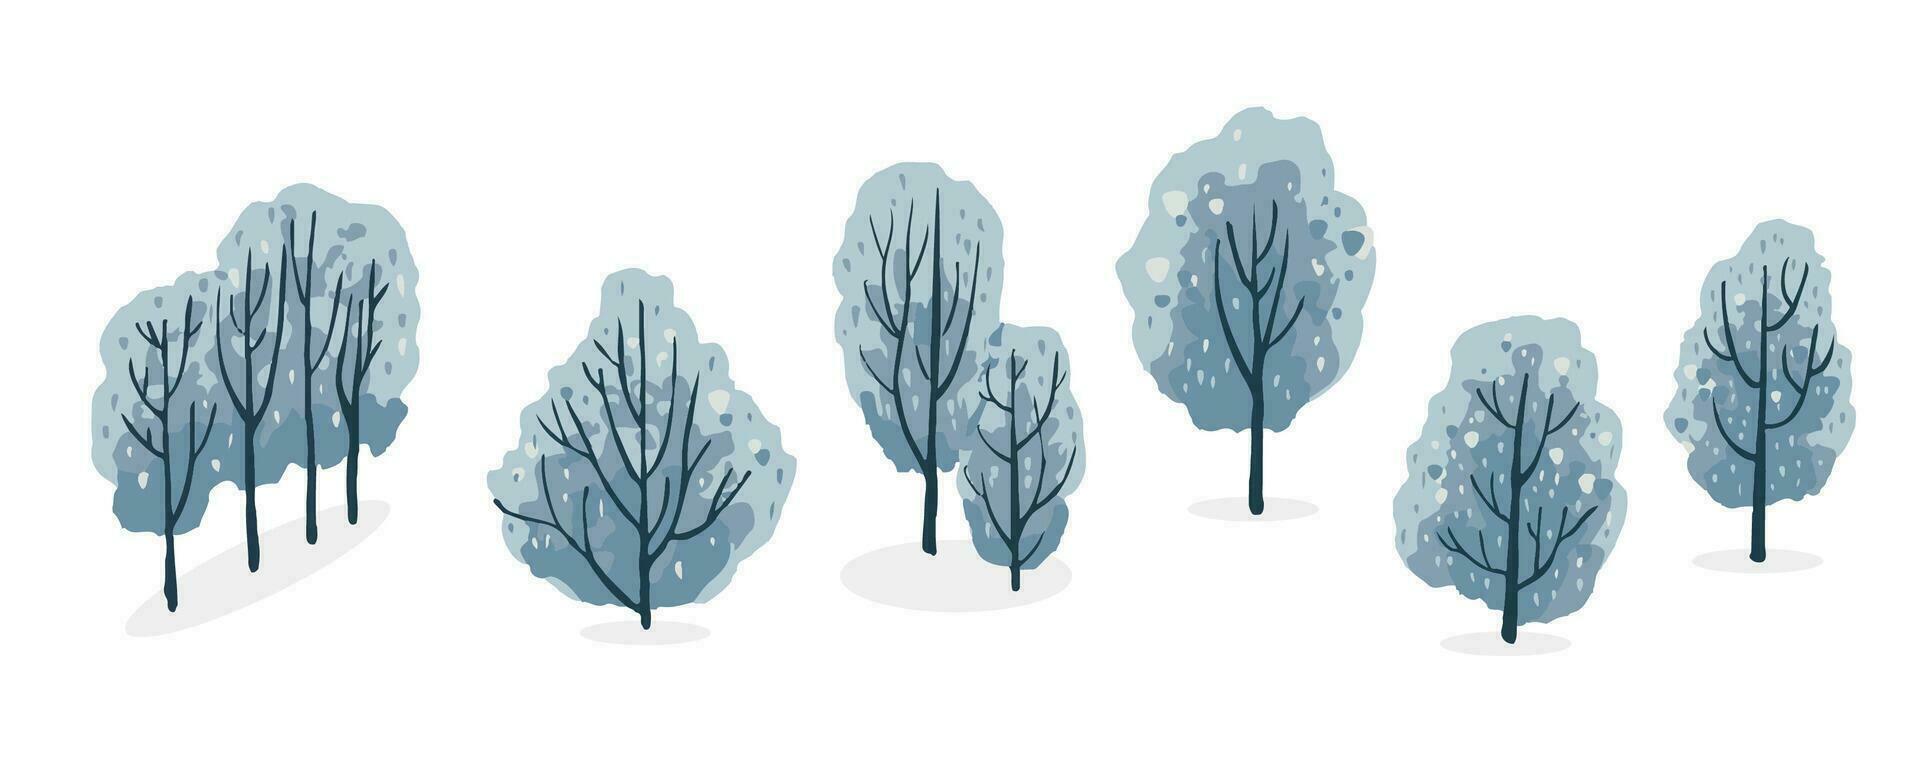 vinter- träd objekt set.editable vektor illustration för vykort